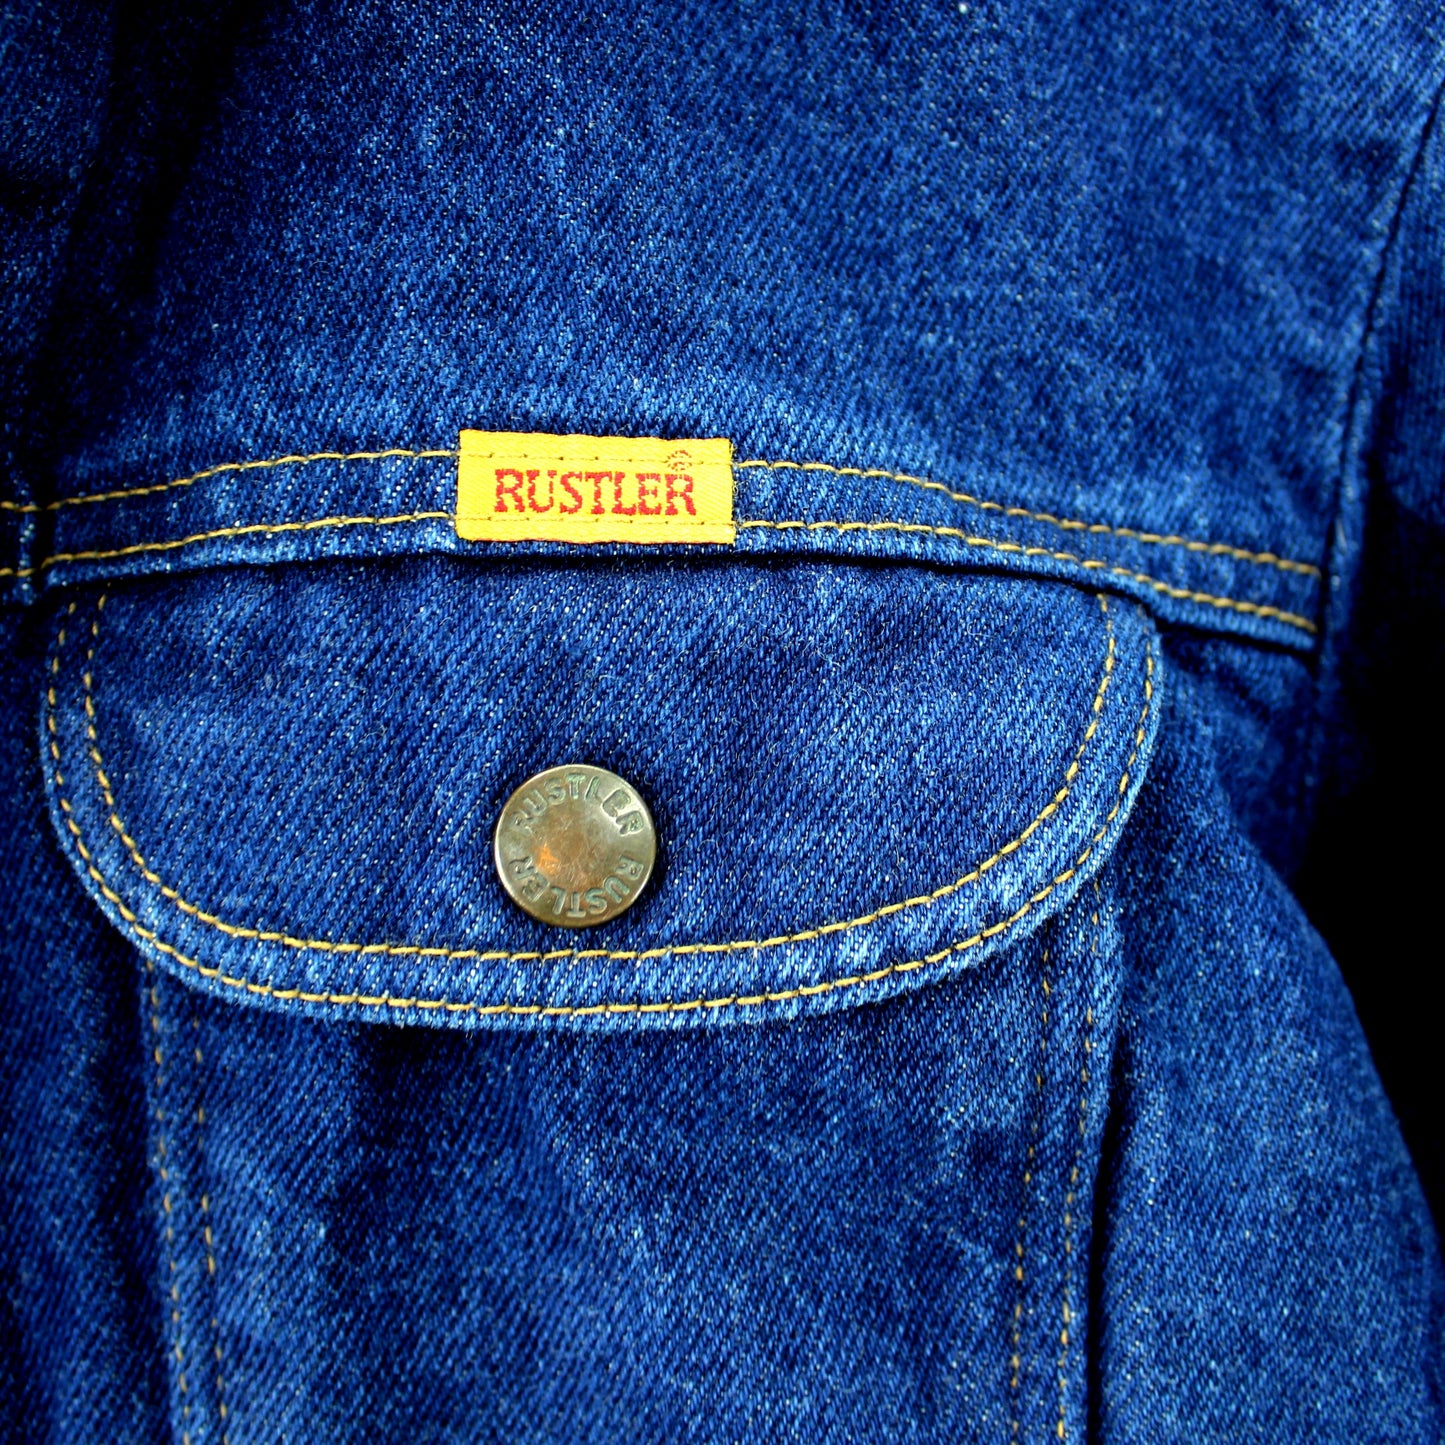 Rustler Dark Blue Denim Cotton Jacket Adjustable Band Waist  Size L button front waist pockets